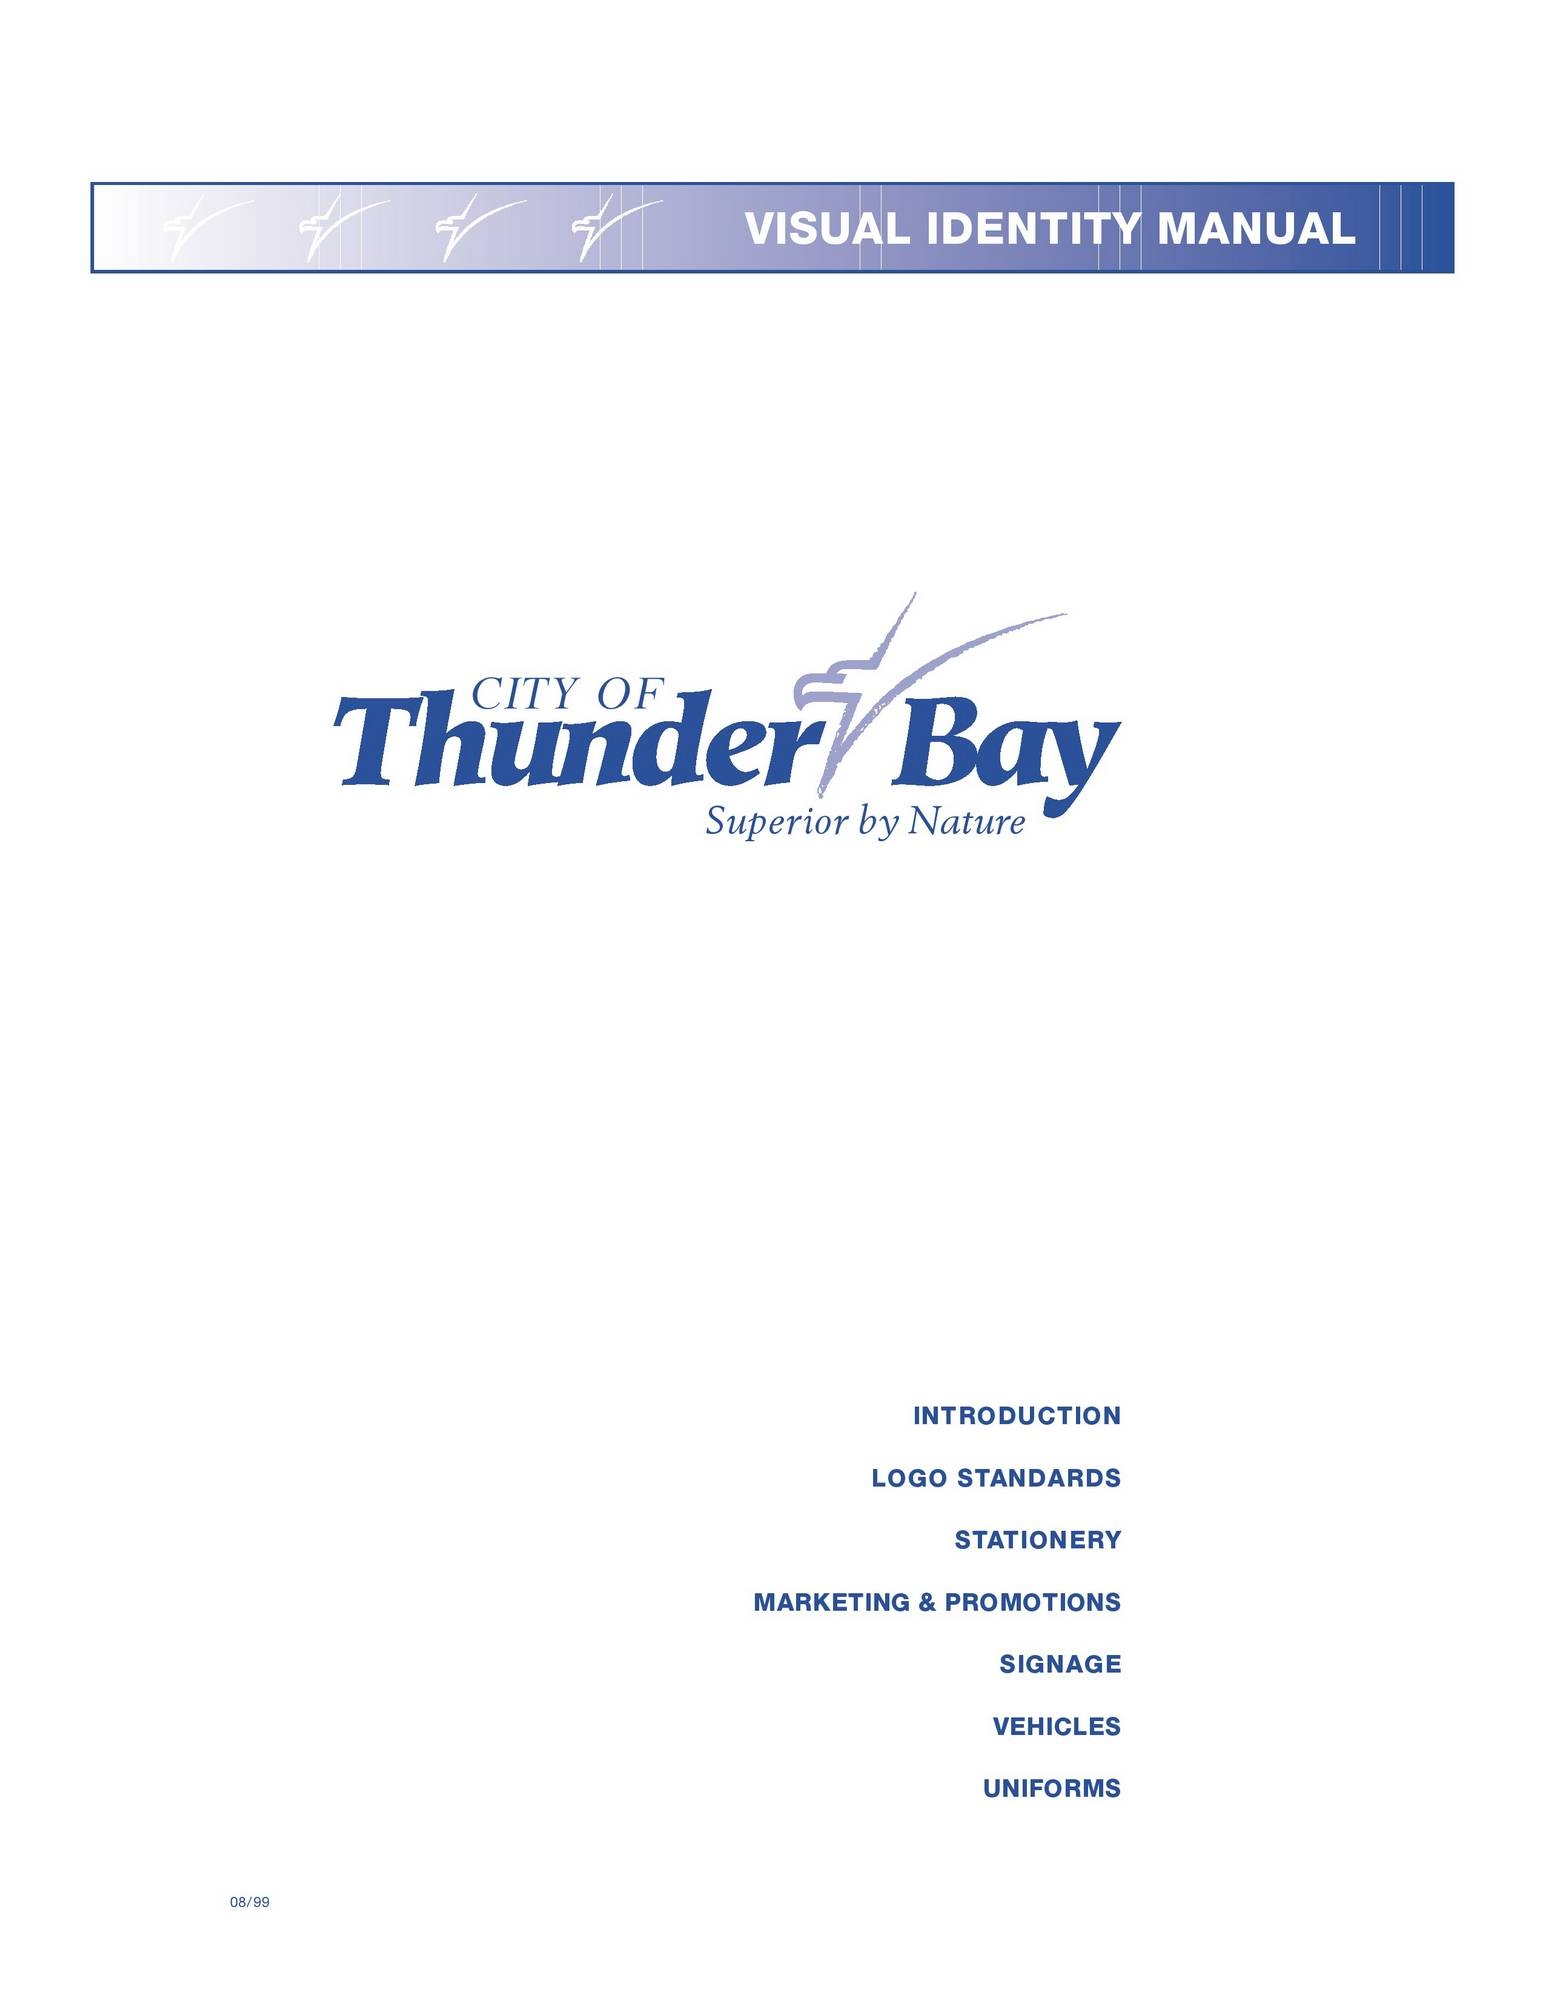 City of Thunder Bay Visual Identity Manual